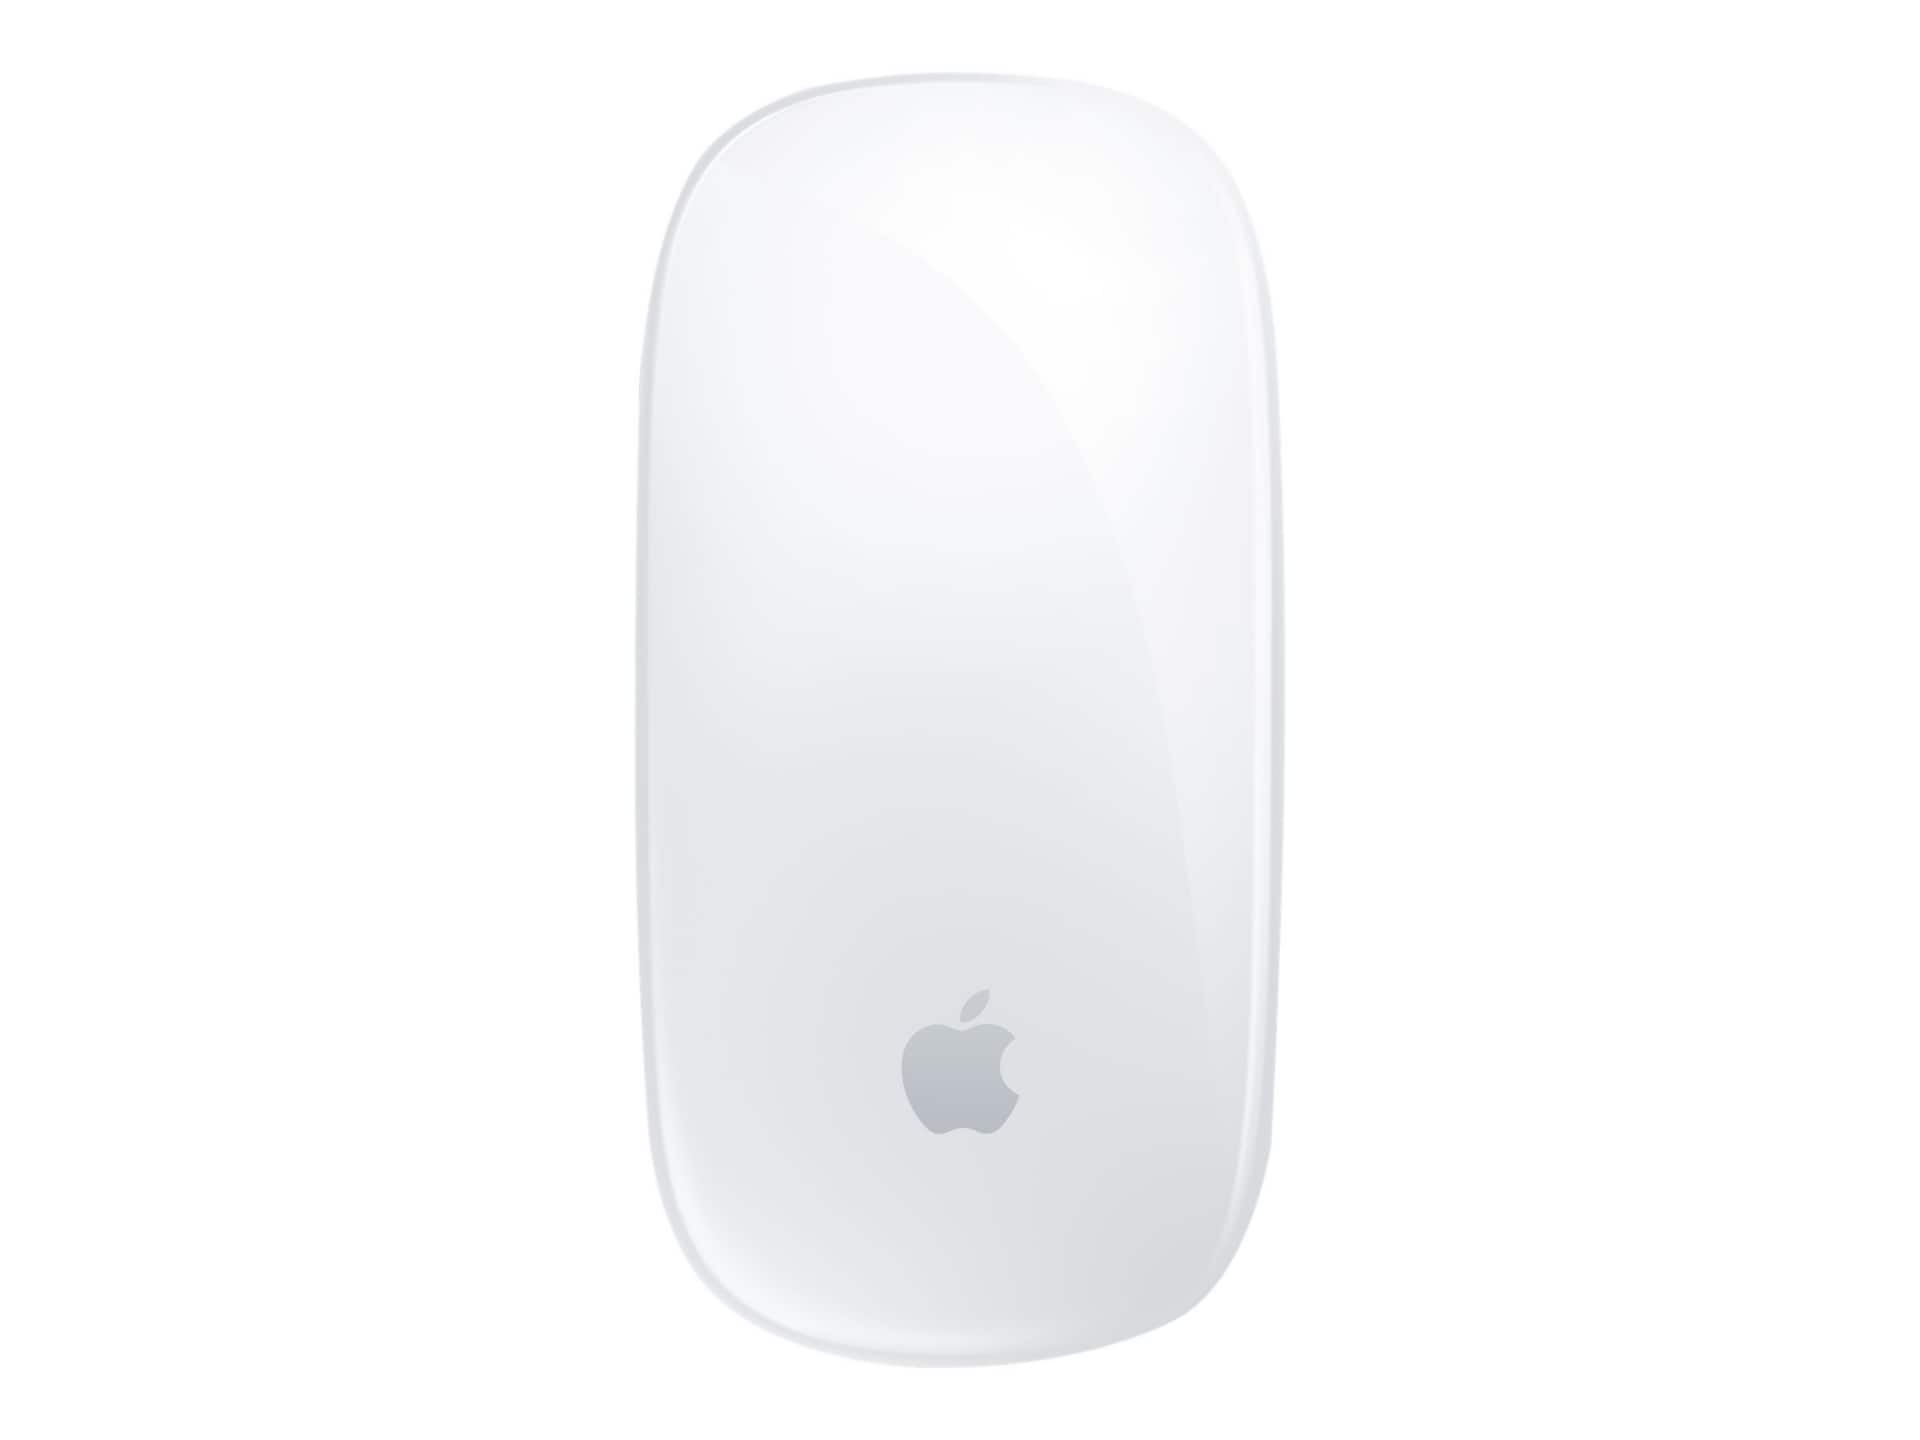 Apple Magic Mouse - mouse - Bluetooth - MK2E3AM/A - Mice - CDW.com